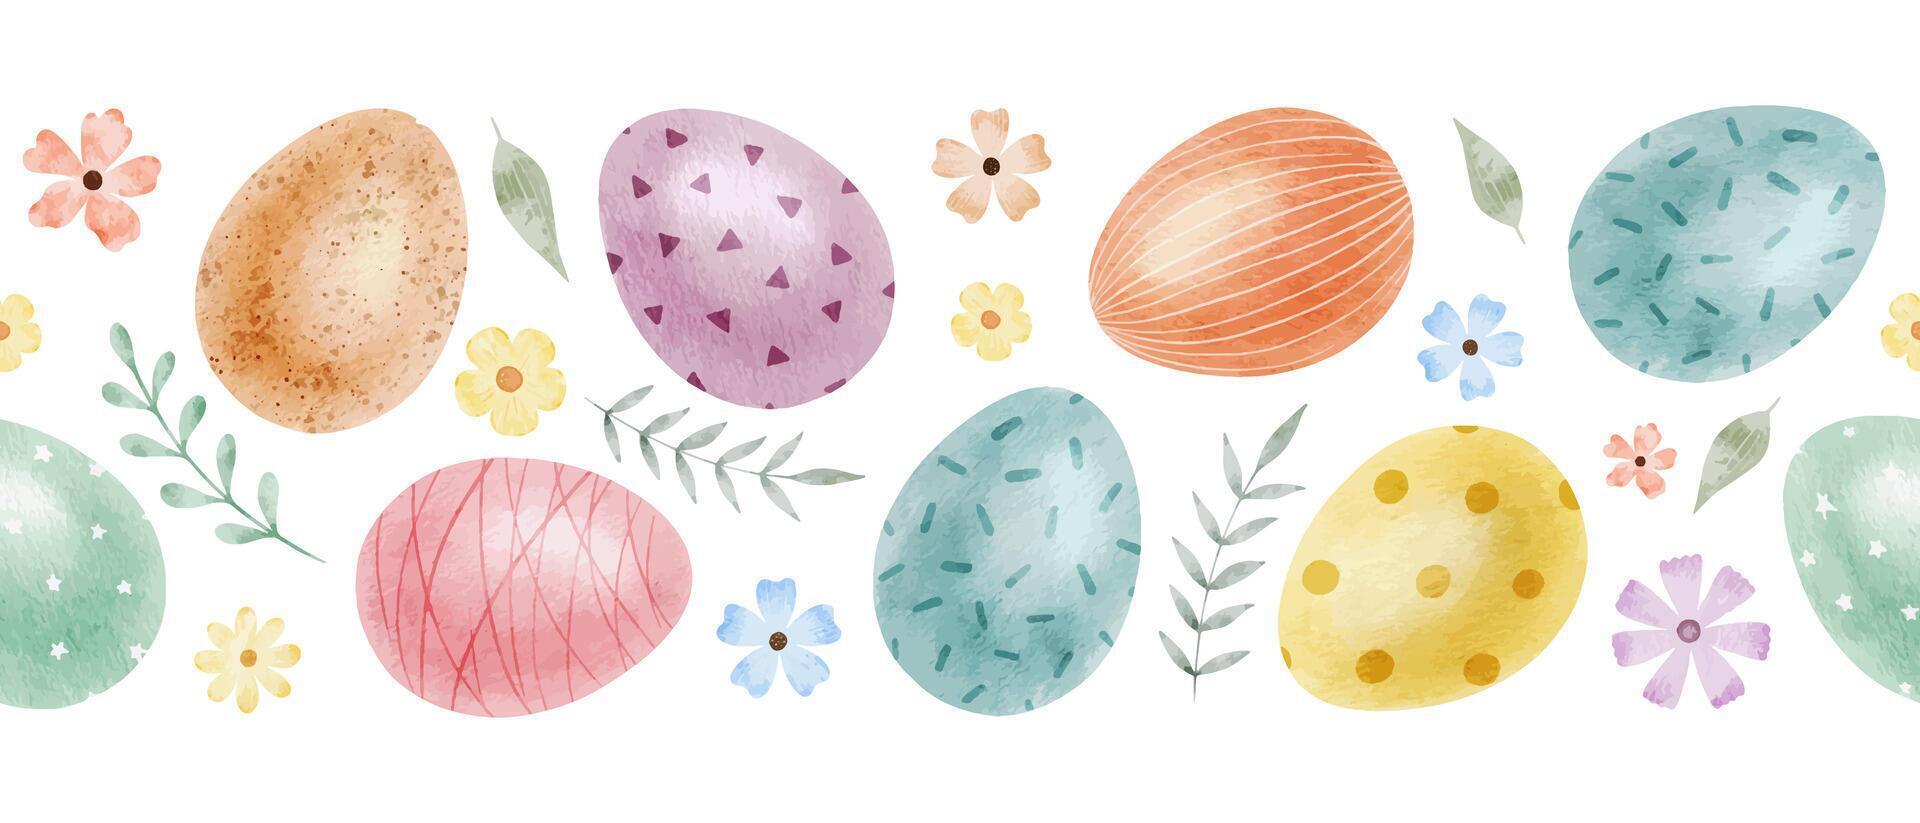 schattig kleurrijk Pasen eieren, bloemen en bladeren. voorjaar naadloos grens van met Pasen eieren met pastel kleuren. geïsoleerd waterverf illustratie. sjabloon voor Pasen kaarten, dekt, affiches, uitnodigingen vector